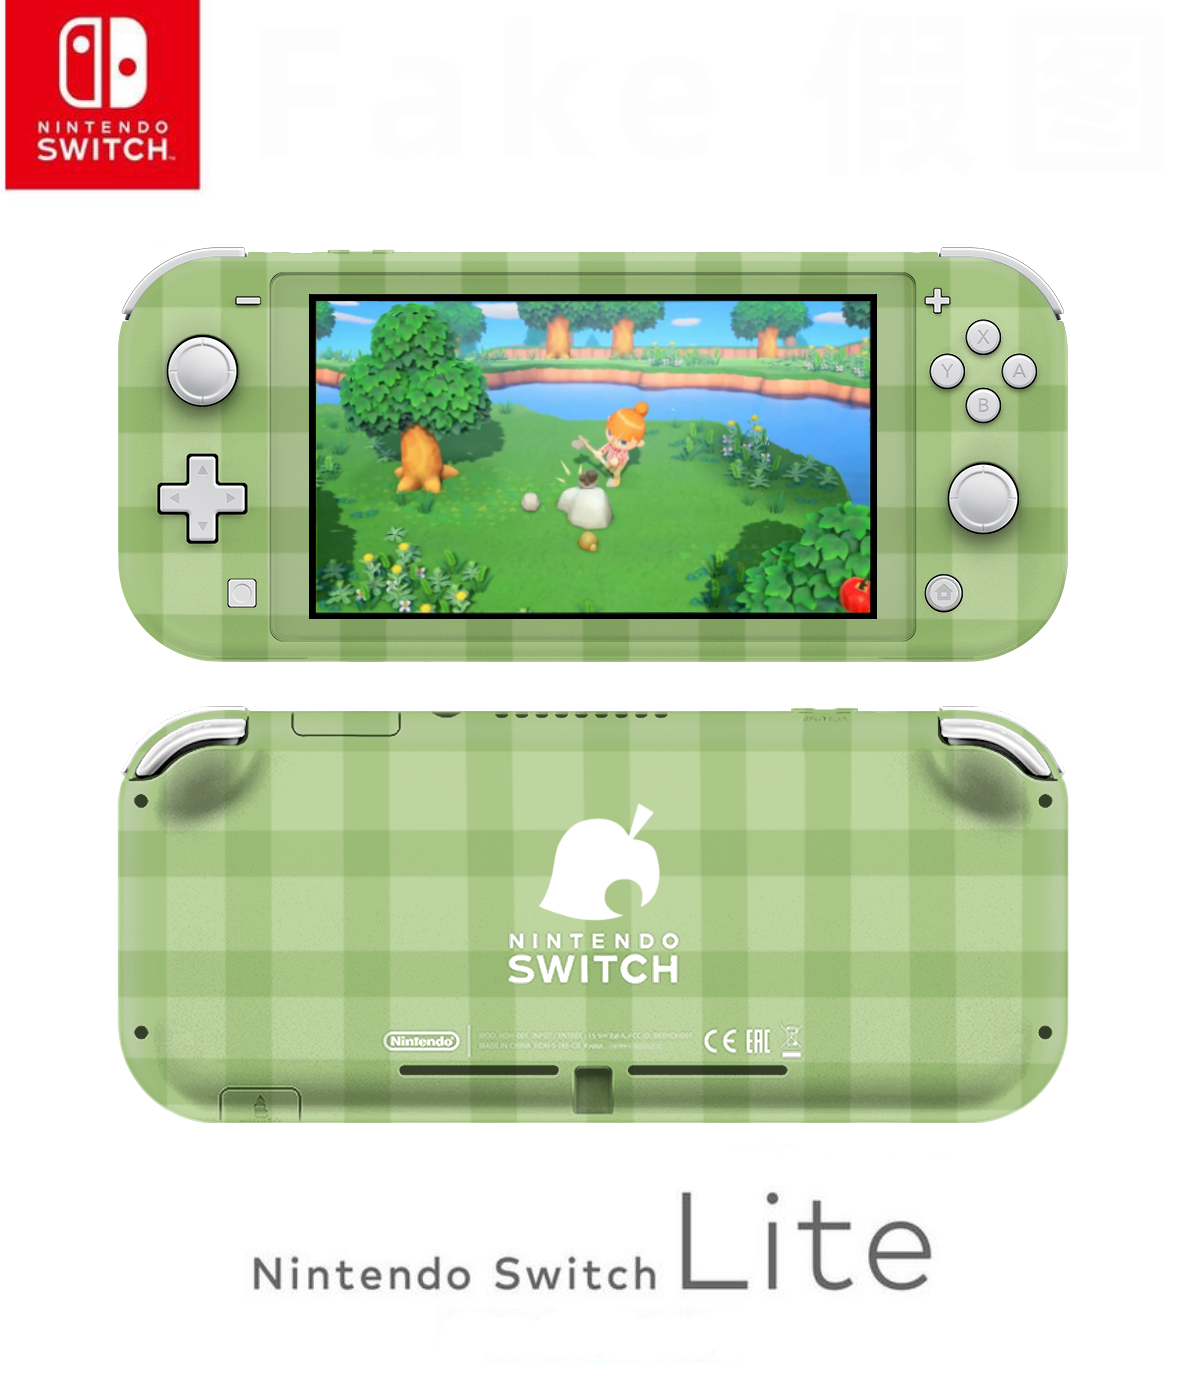 Nintendo Switch Lite Acnh Bundle Limited Time Offer Slabrealty Com